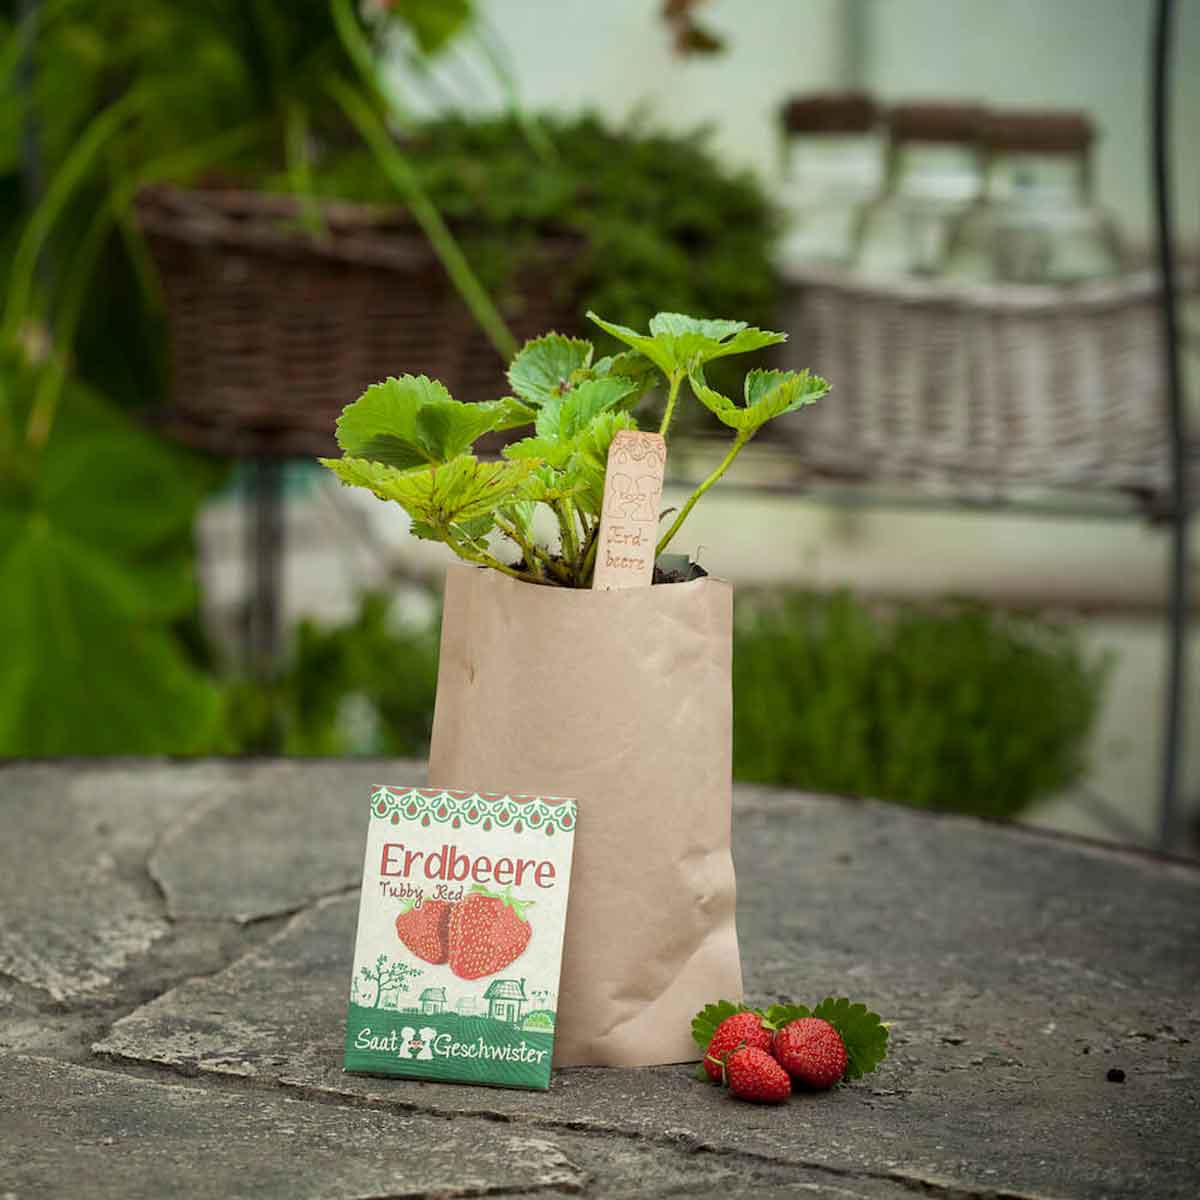 Erdbeere Tubby Red Minigarten Früchte DIY Anzucht Set